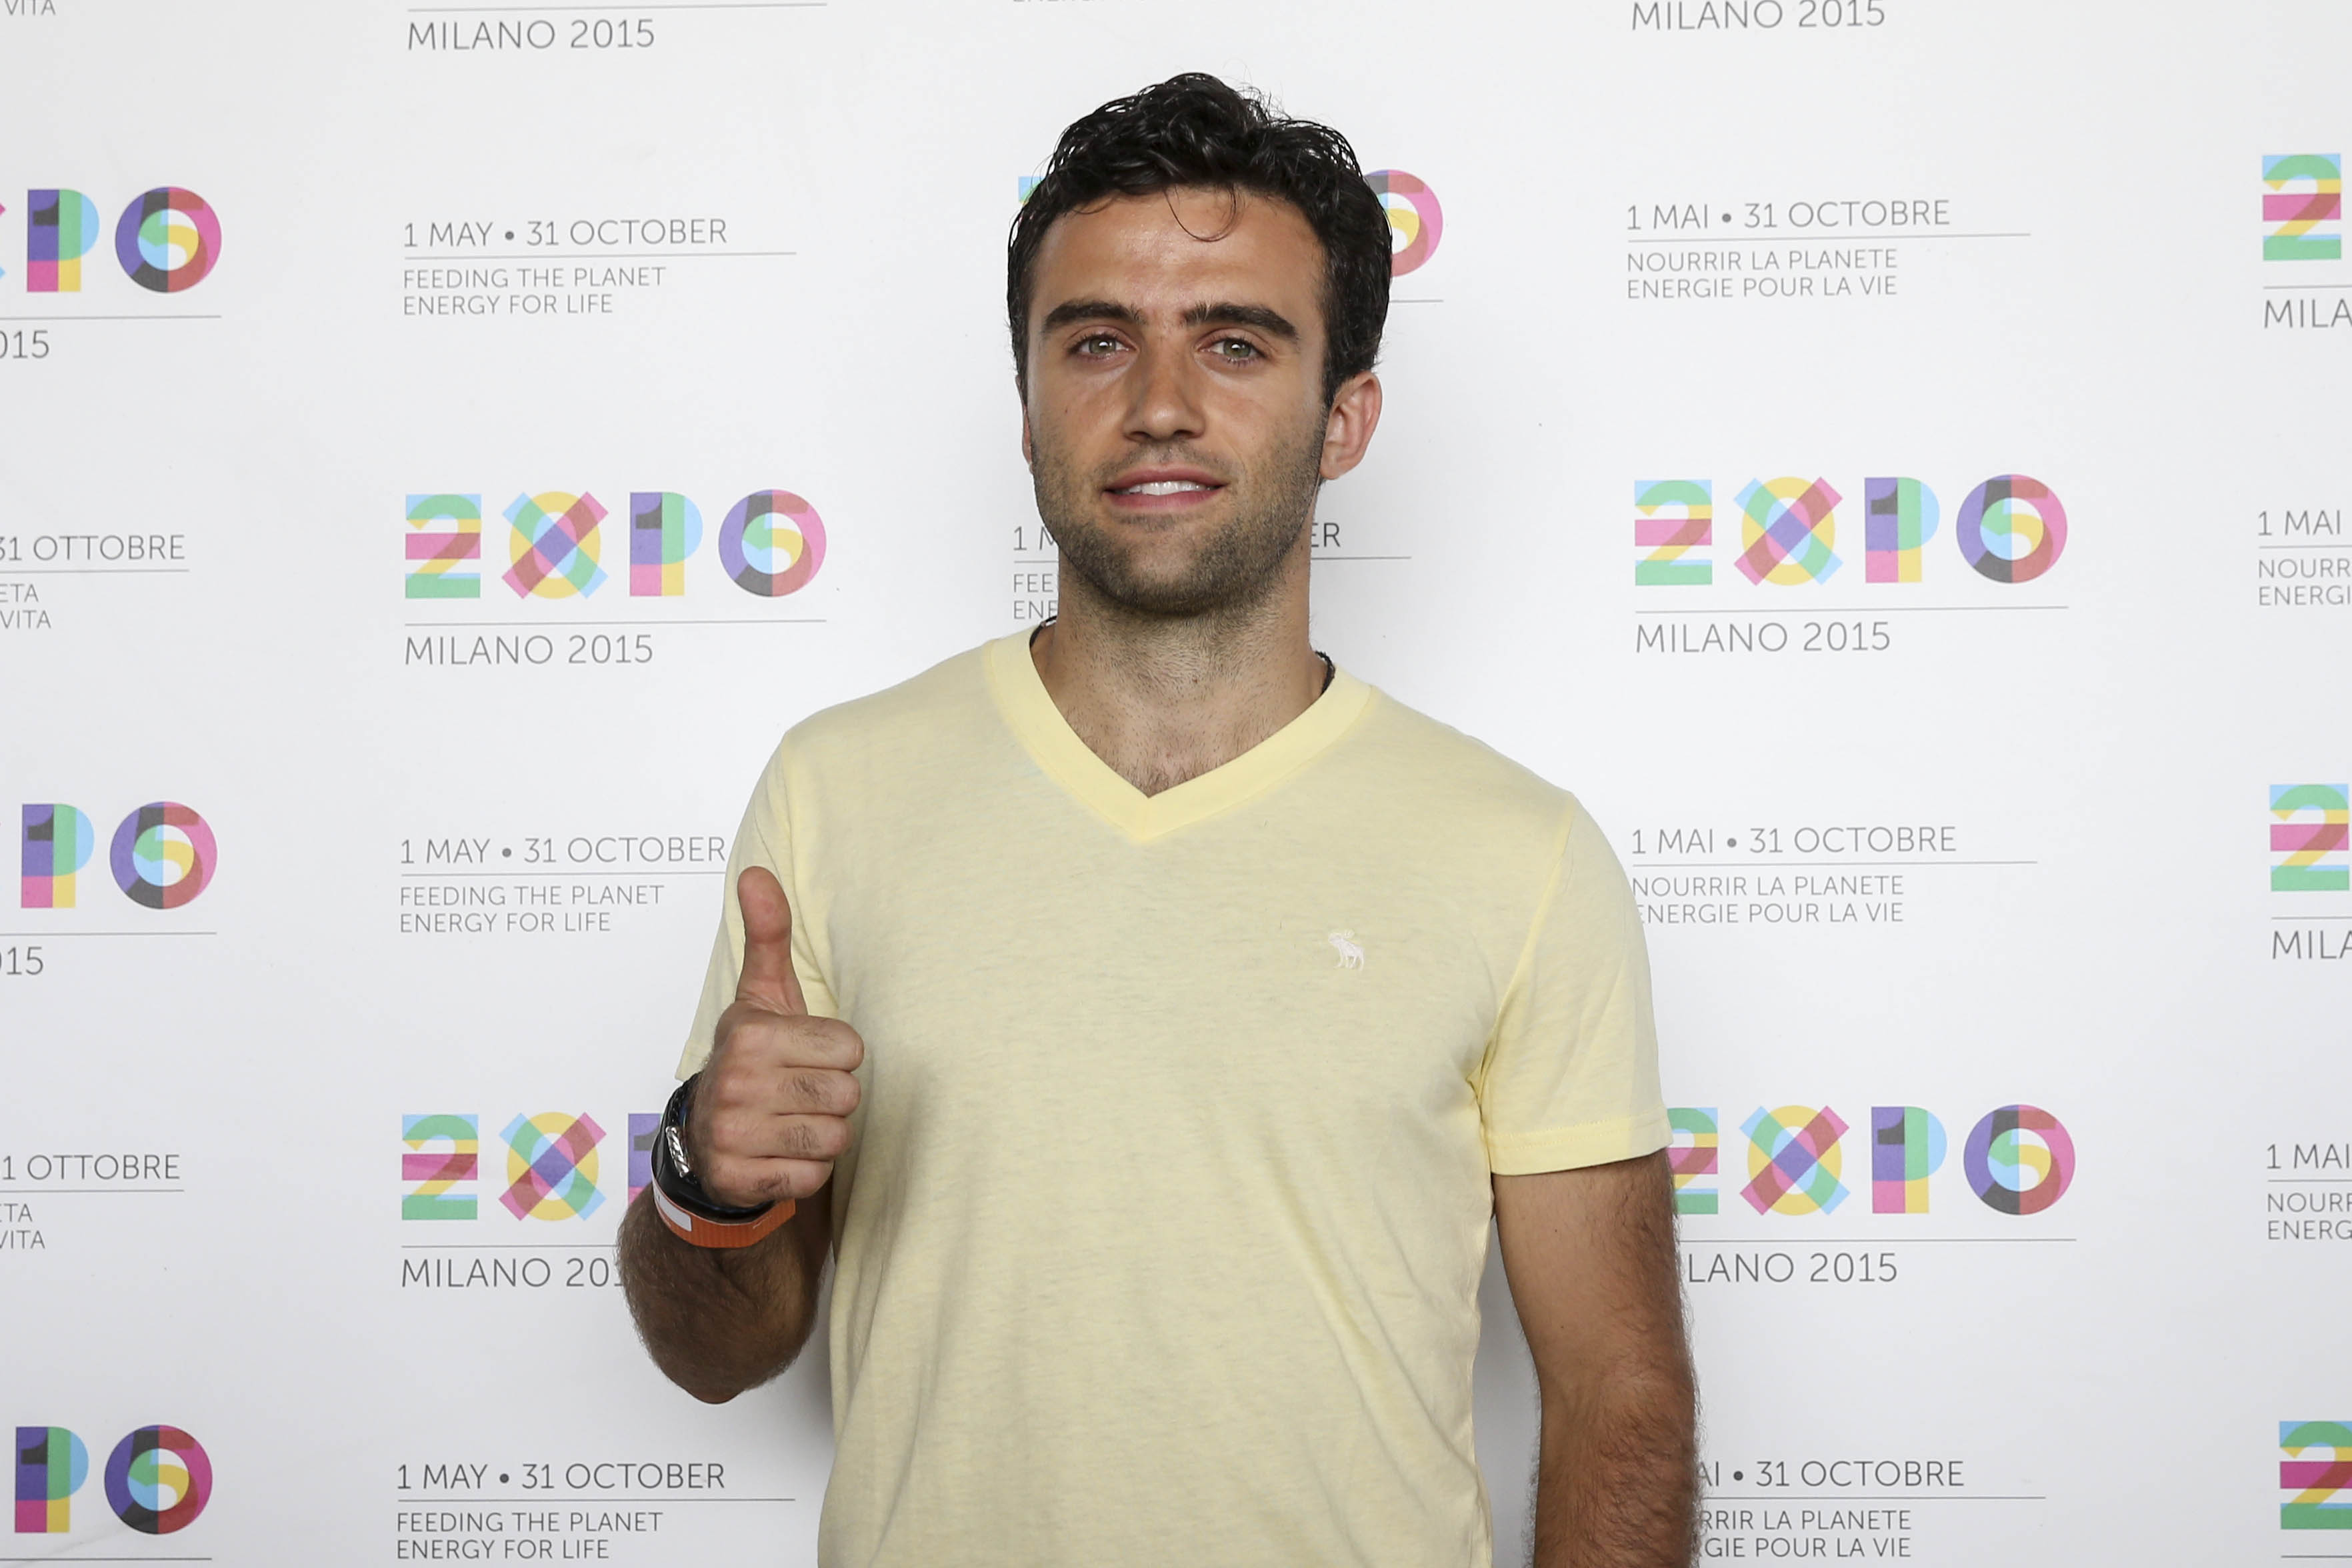 Expo Milano 2015: Giuseppe Rossi in visita all’Esposizione Universale meneghina